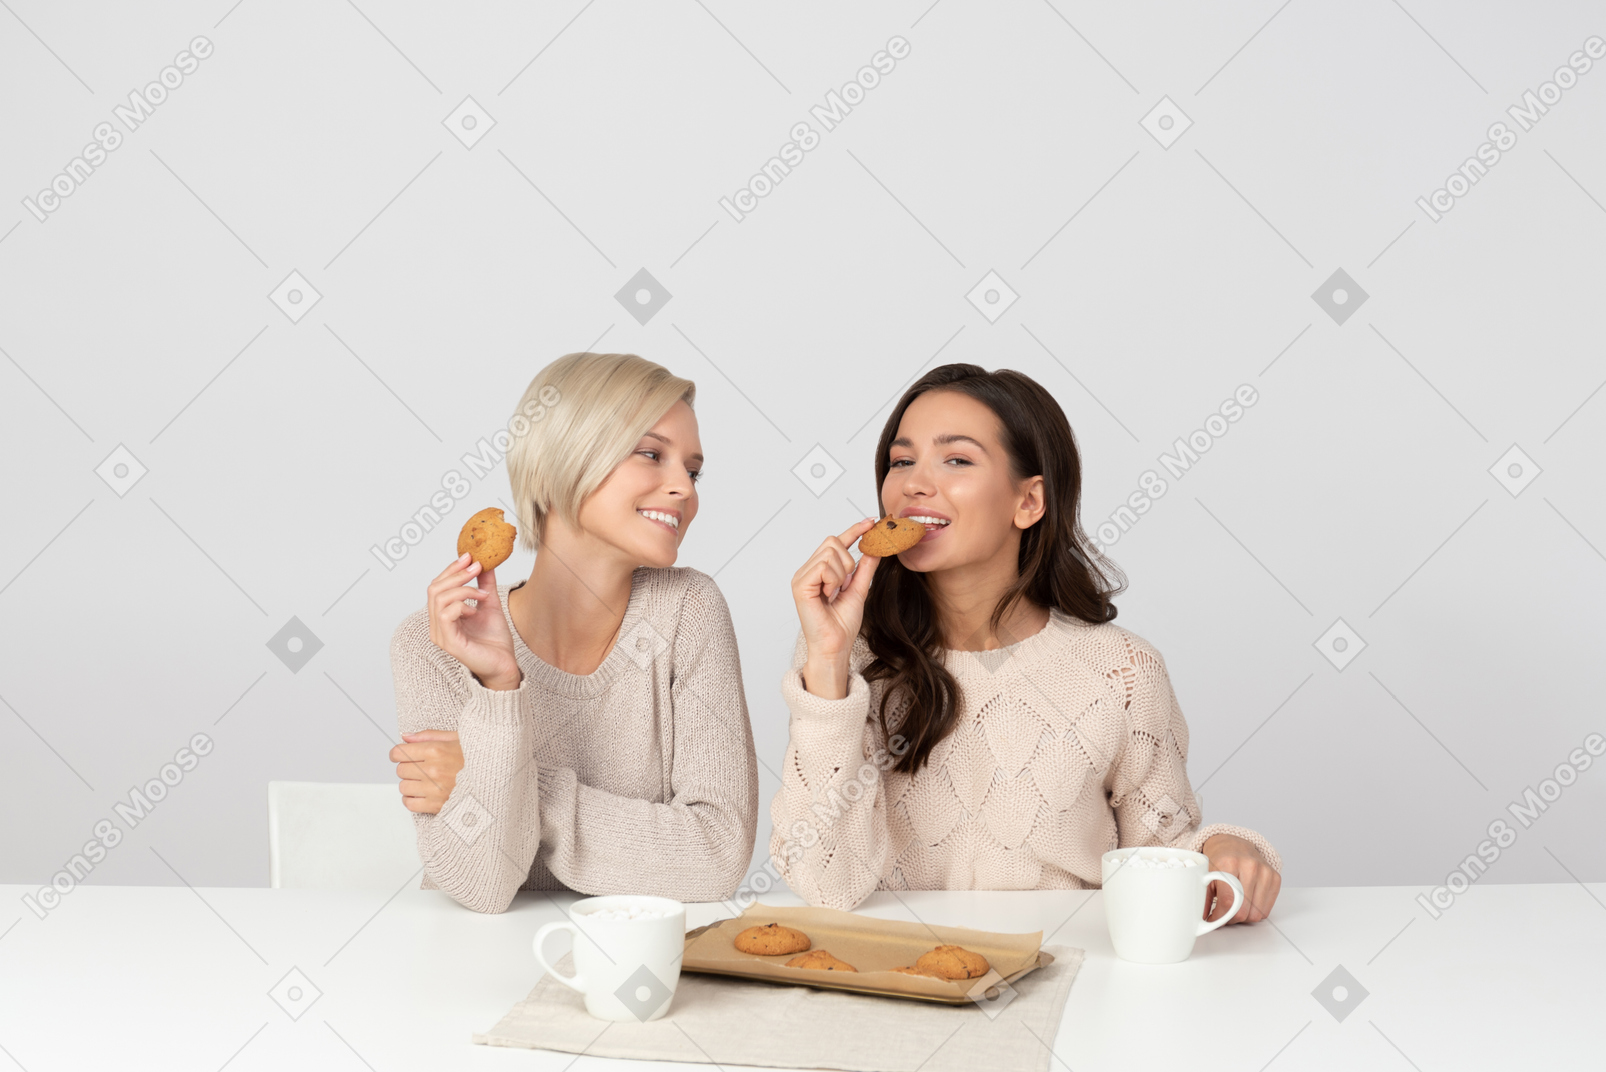 쿠키를 먹고 웃는 젊은 여성